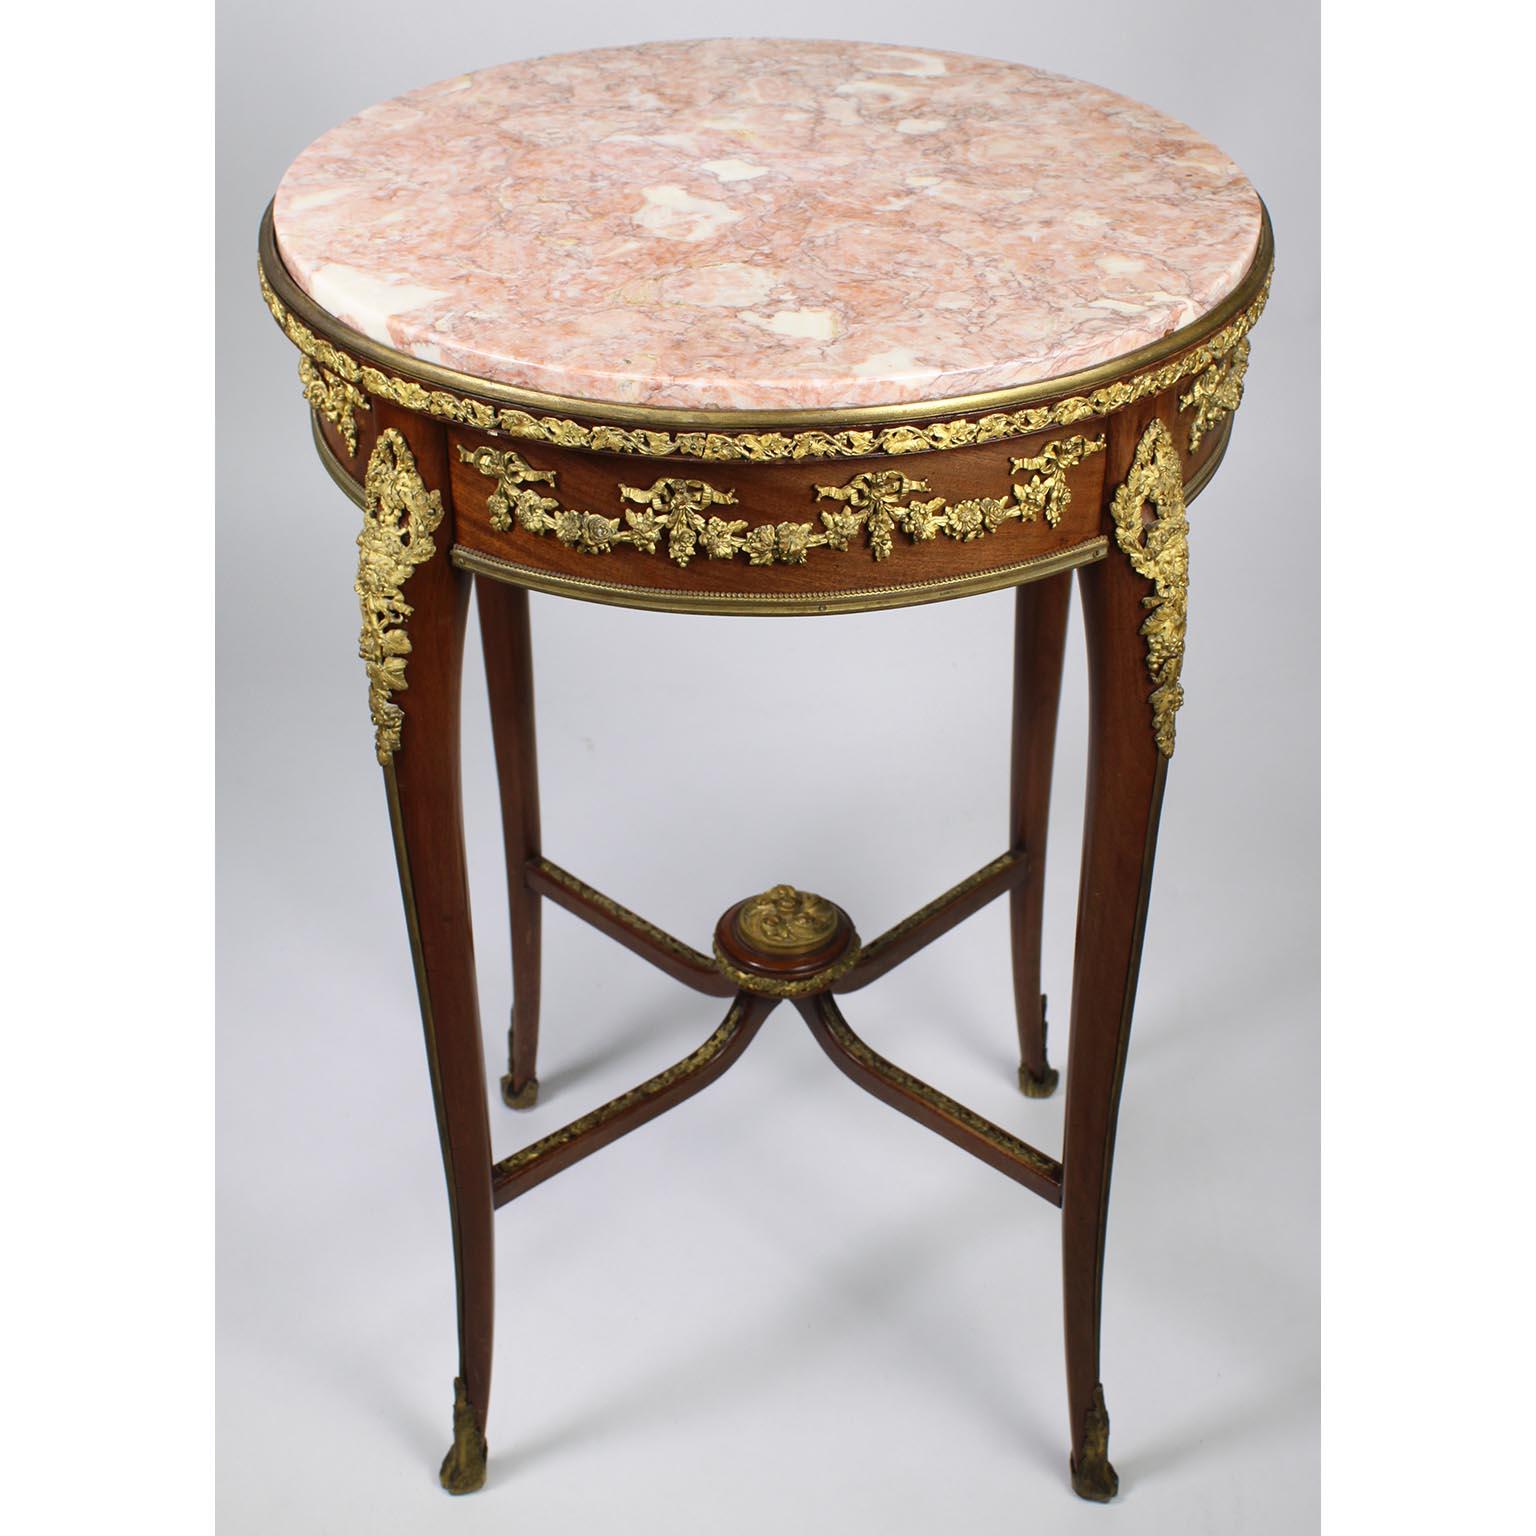 Table d'appoint circulaire en acajou et bronze doré (Ormolu) de la Belle Époque, avec plateau en marbre, attribuée à François Linke (1855-1946). La table d'appoint à un seul tiroir est ornée d'un plateau rond en marbre rose veiné surmonté d'une